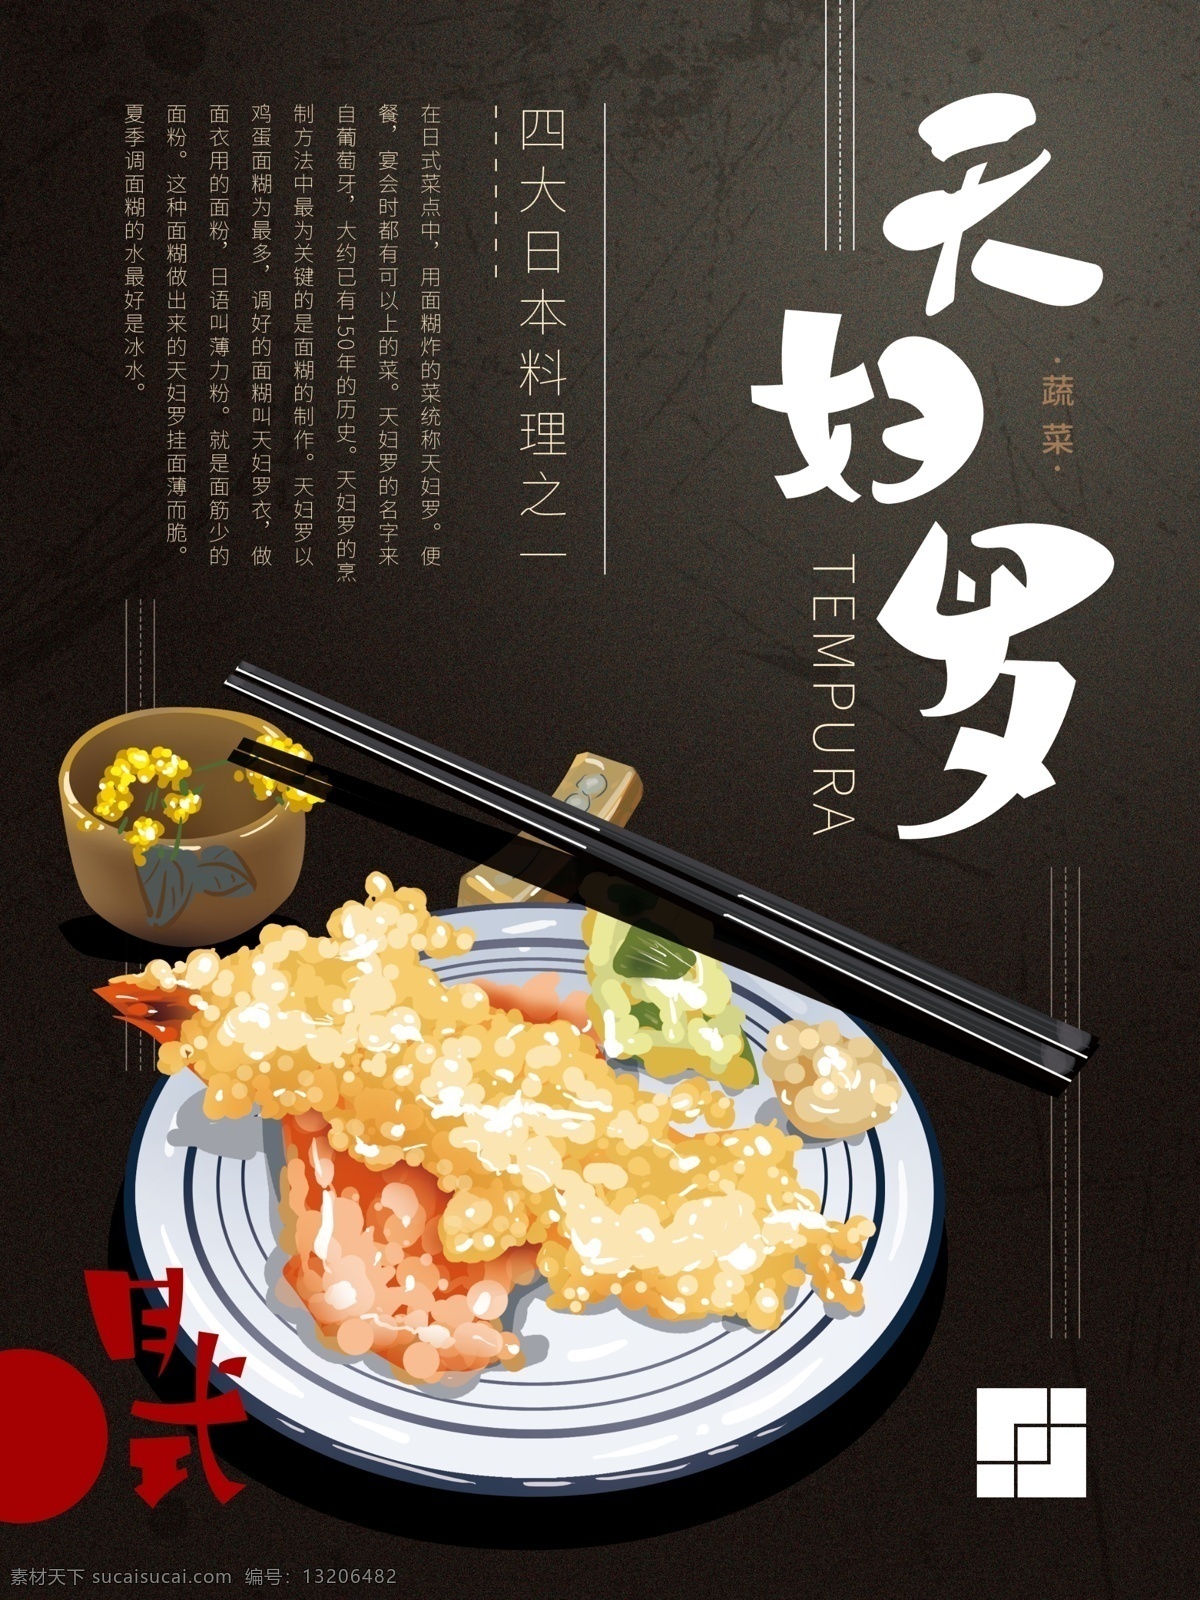 日式 料理 天 妇 罗 日式料理 日式料理模板 天妇罗 韩式料理 日式料理广告 日本料理 舌尖上的美食 传统美食 中华传统美食 民以食为天